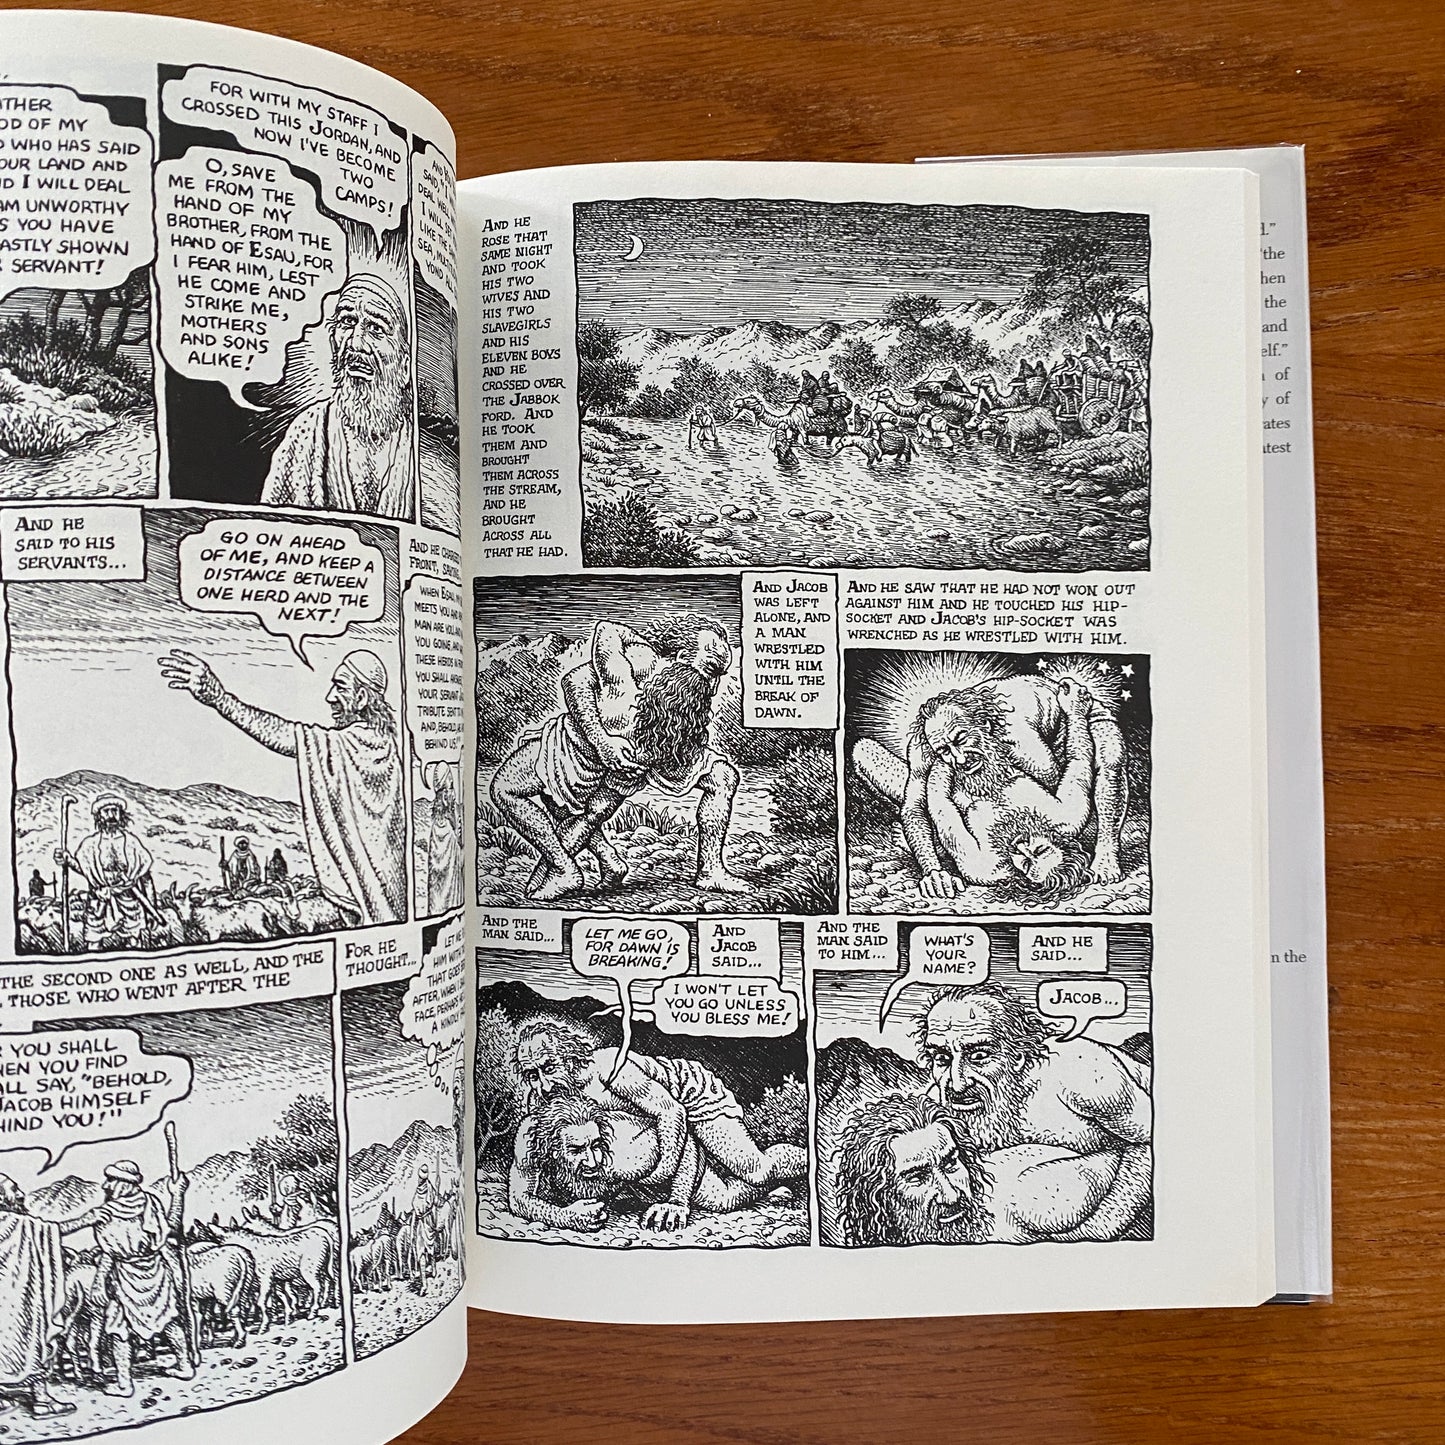 The Book of Genesis Illustrated - Robert Crumb